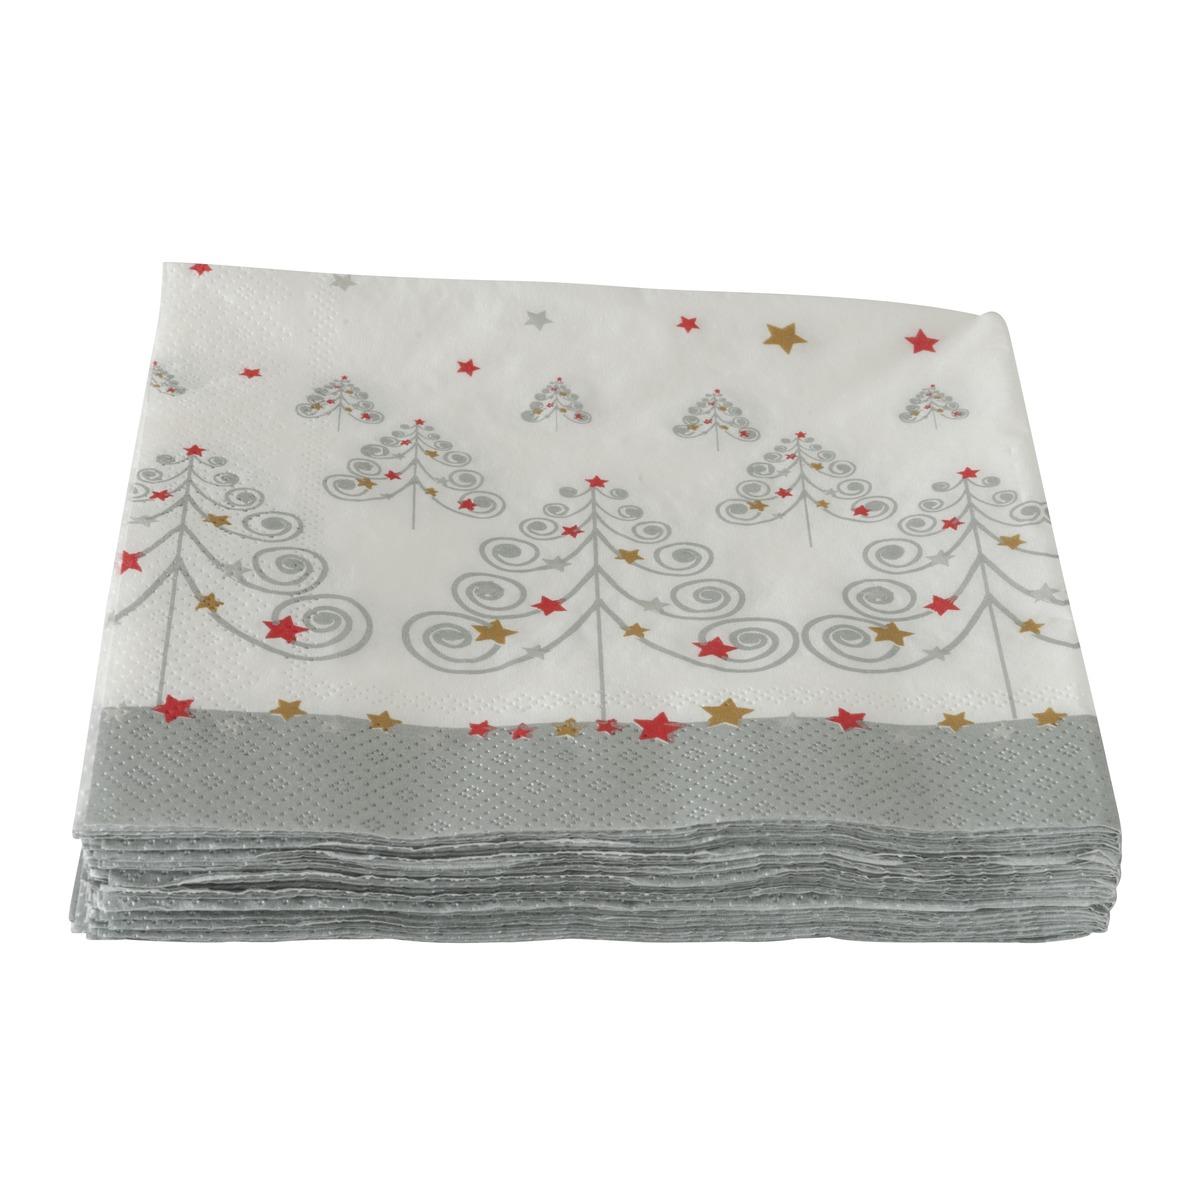 Lot de 20 serviettes en papier motif sapin de Noël - 33 x 33 cm - Blanc, Rouge, Gris